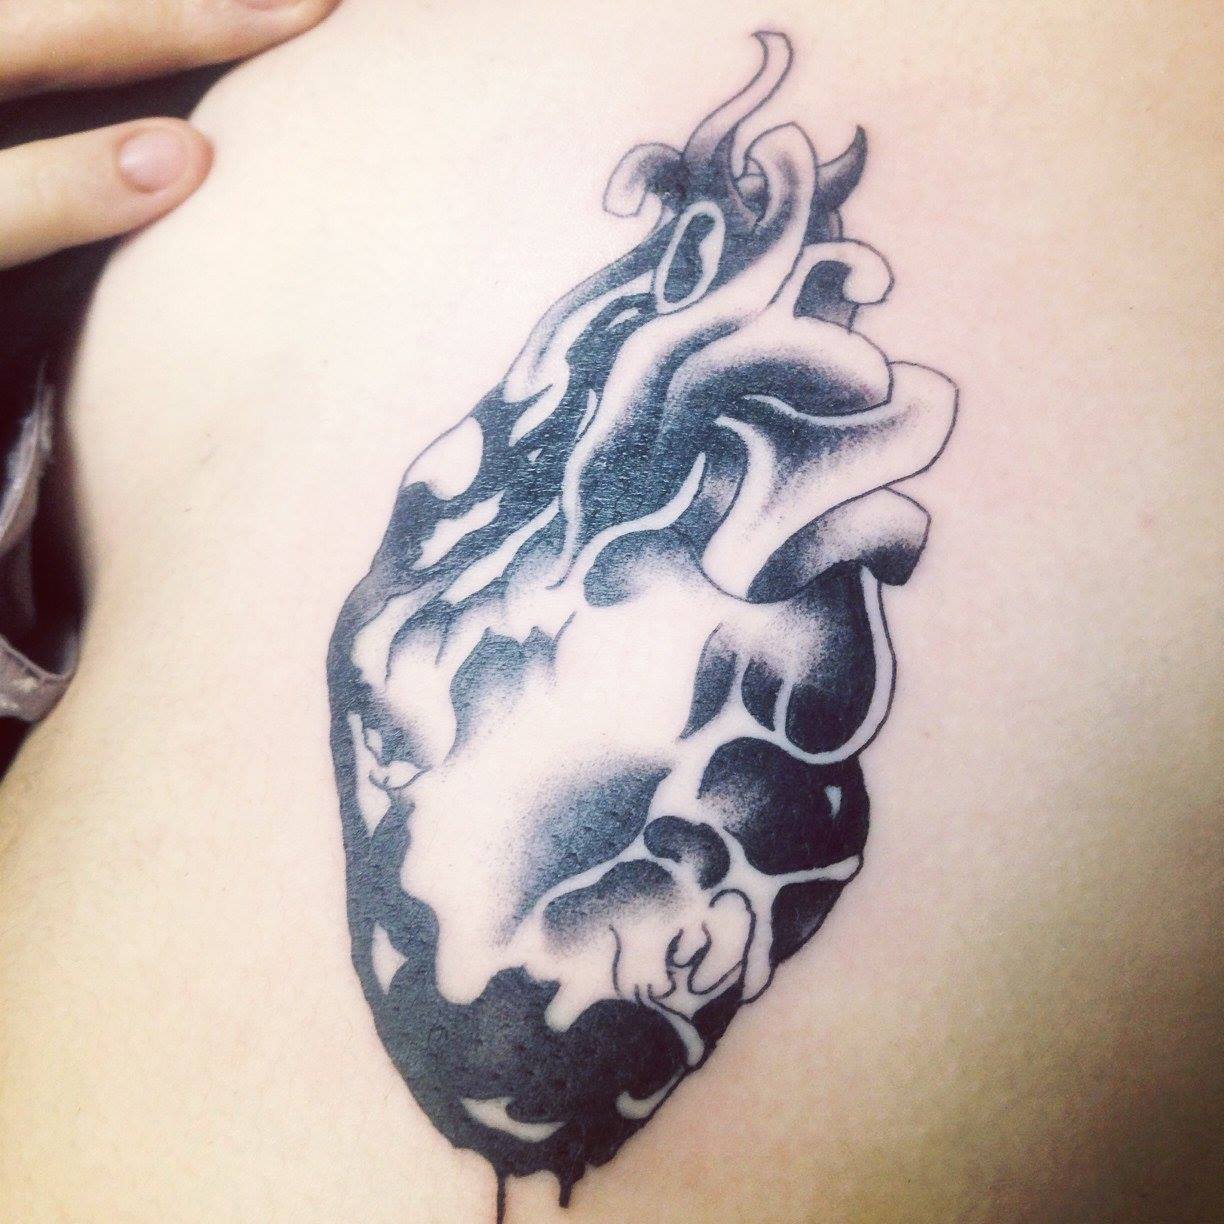 Tatuaje de un corazón en blanco y negro